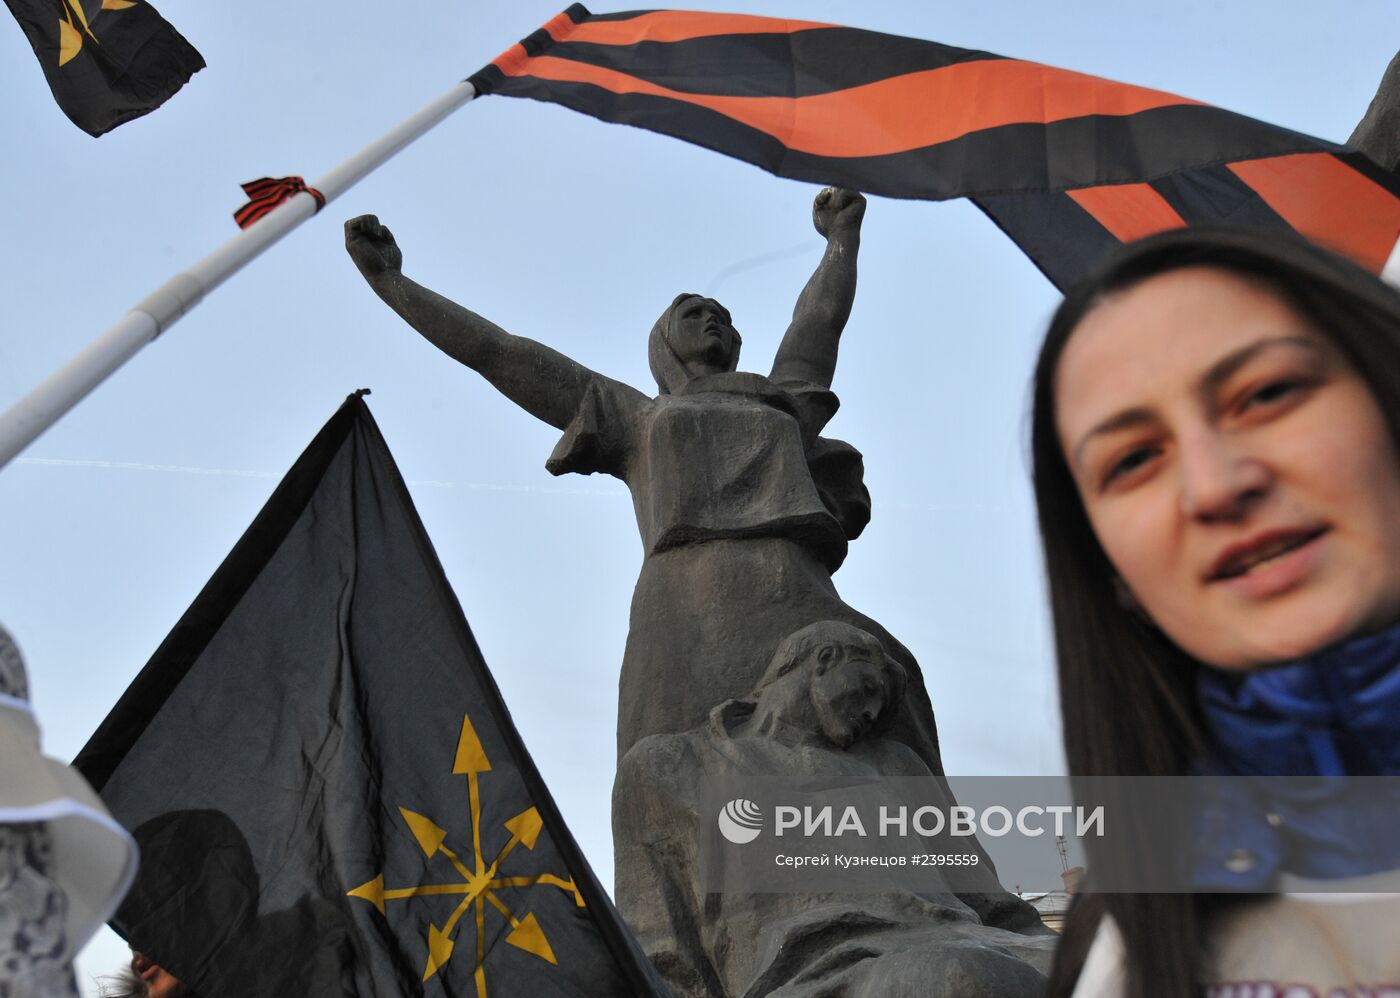 Митинг в поддержку народного восстания на Украине